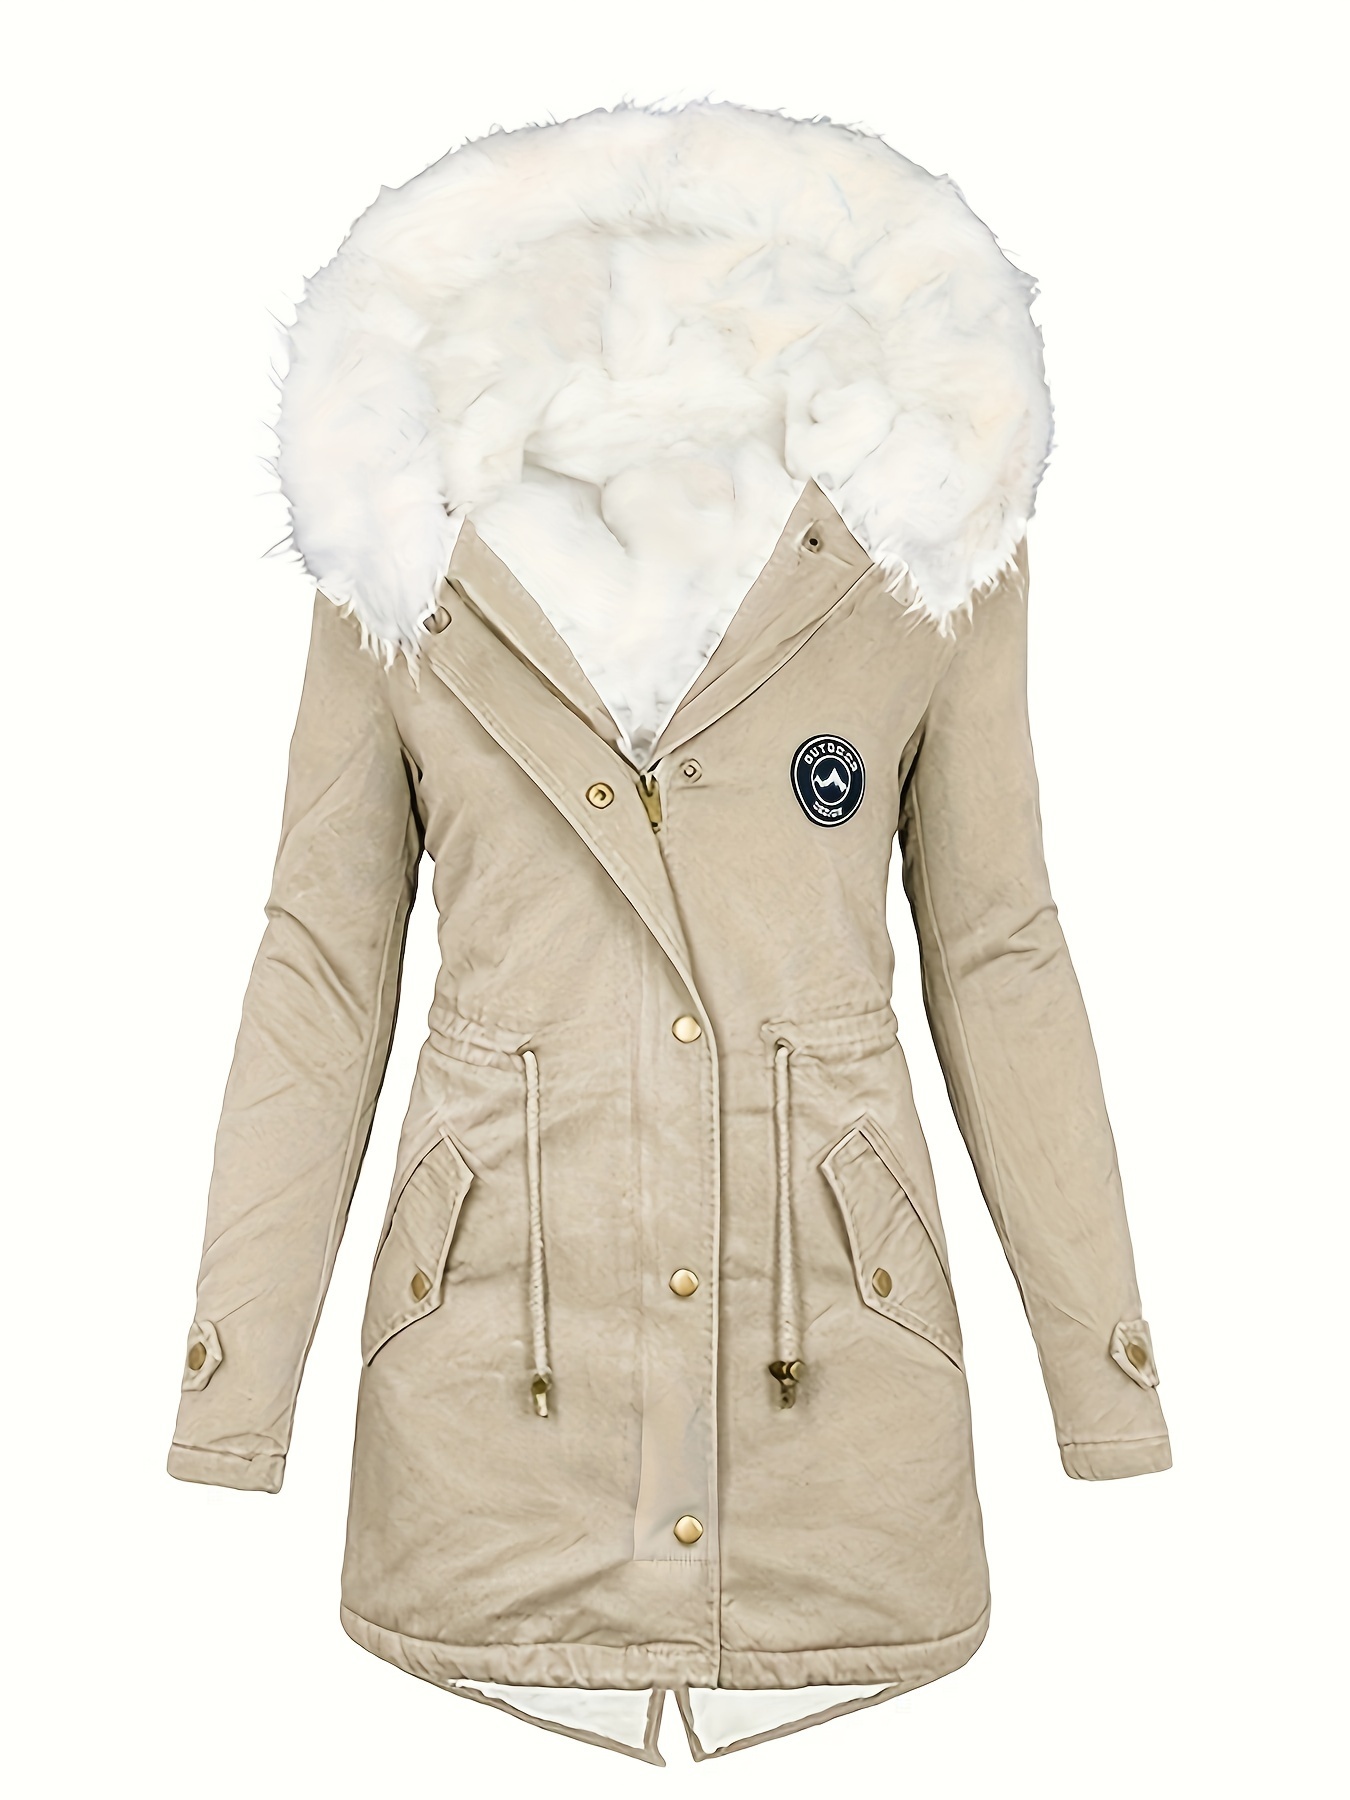 CREATMO US Women's Winter Hooded Coat Waterproof Warm Long Puffer Jacket  Parka